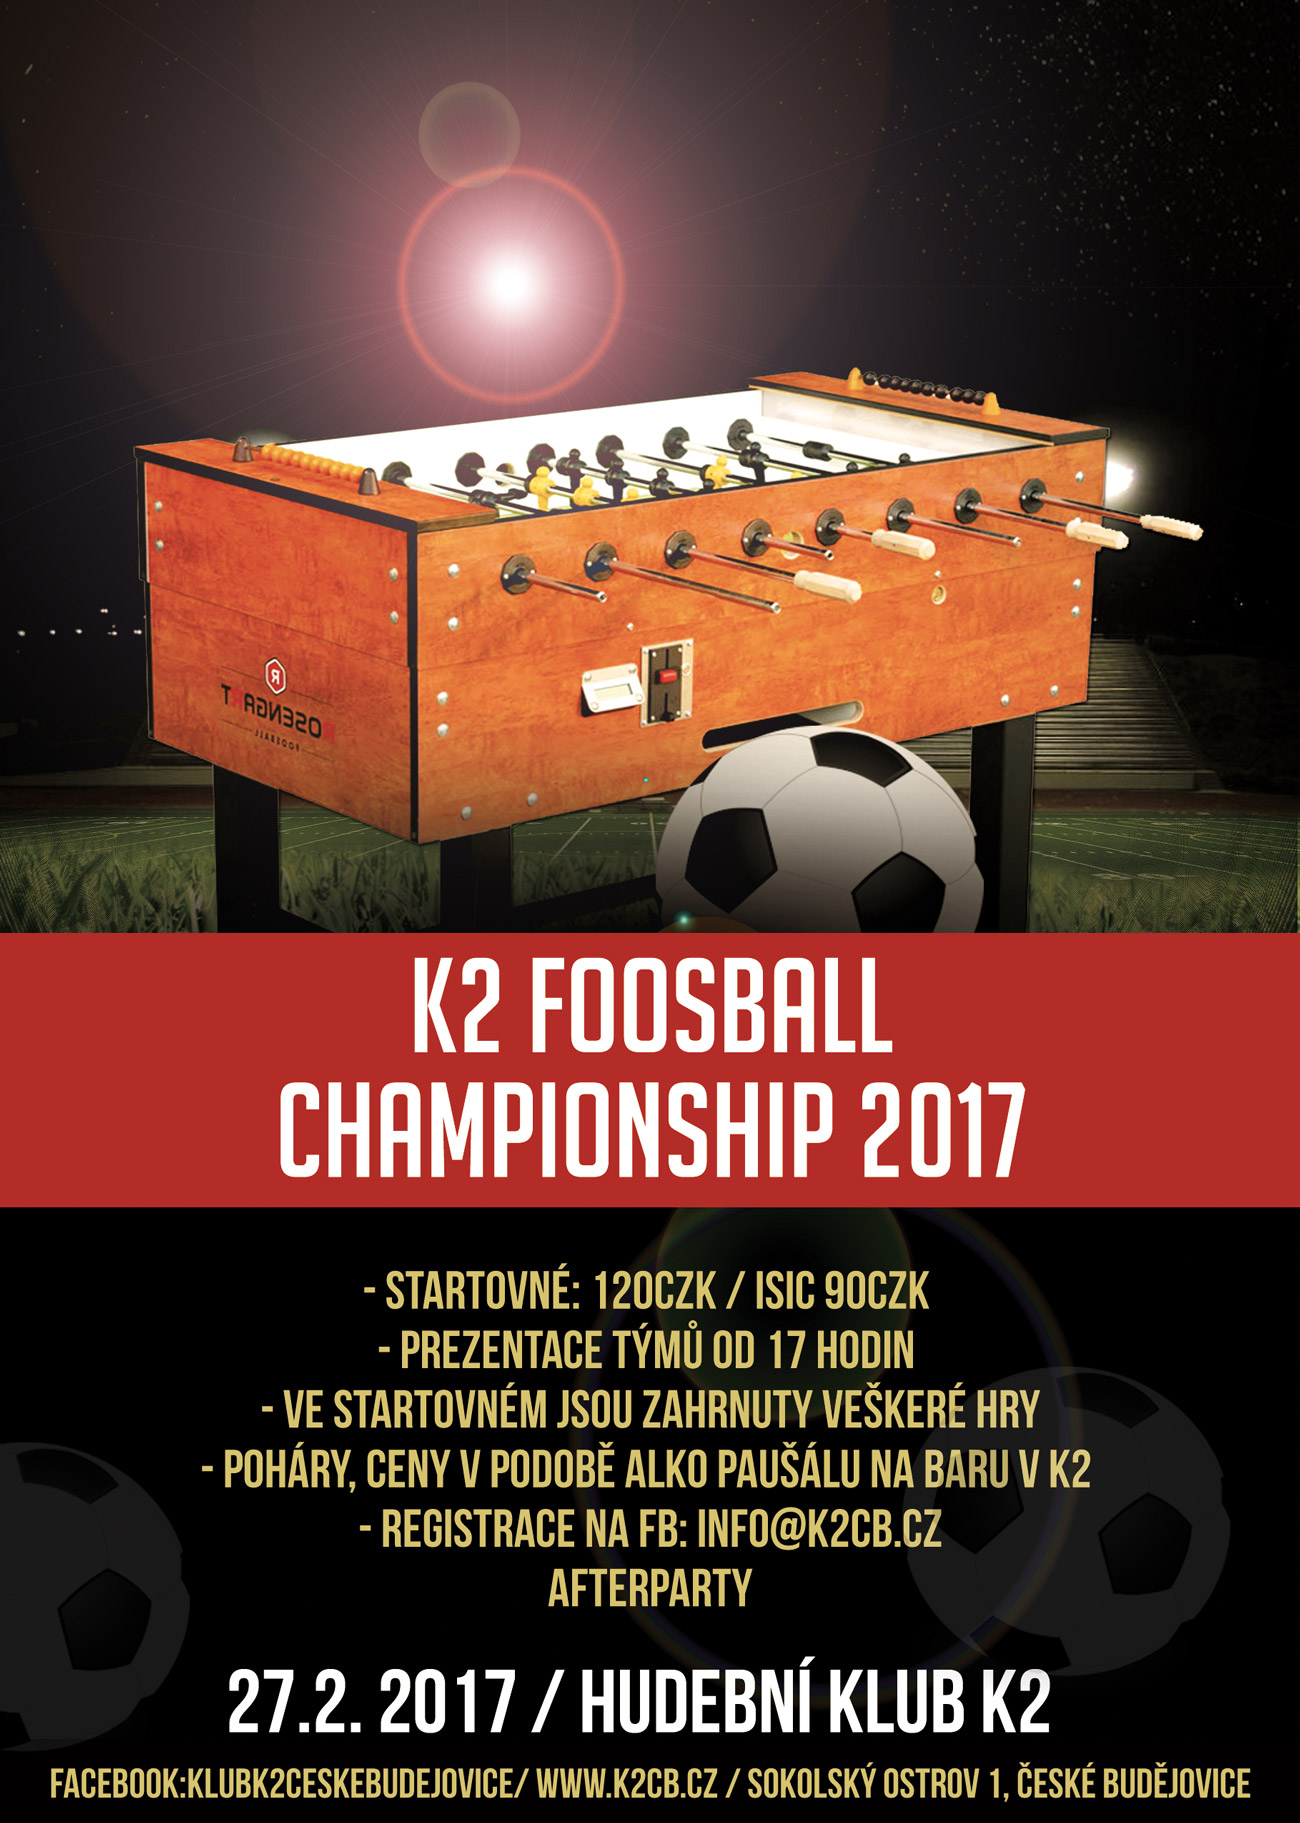 K2 foosball championship 2017